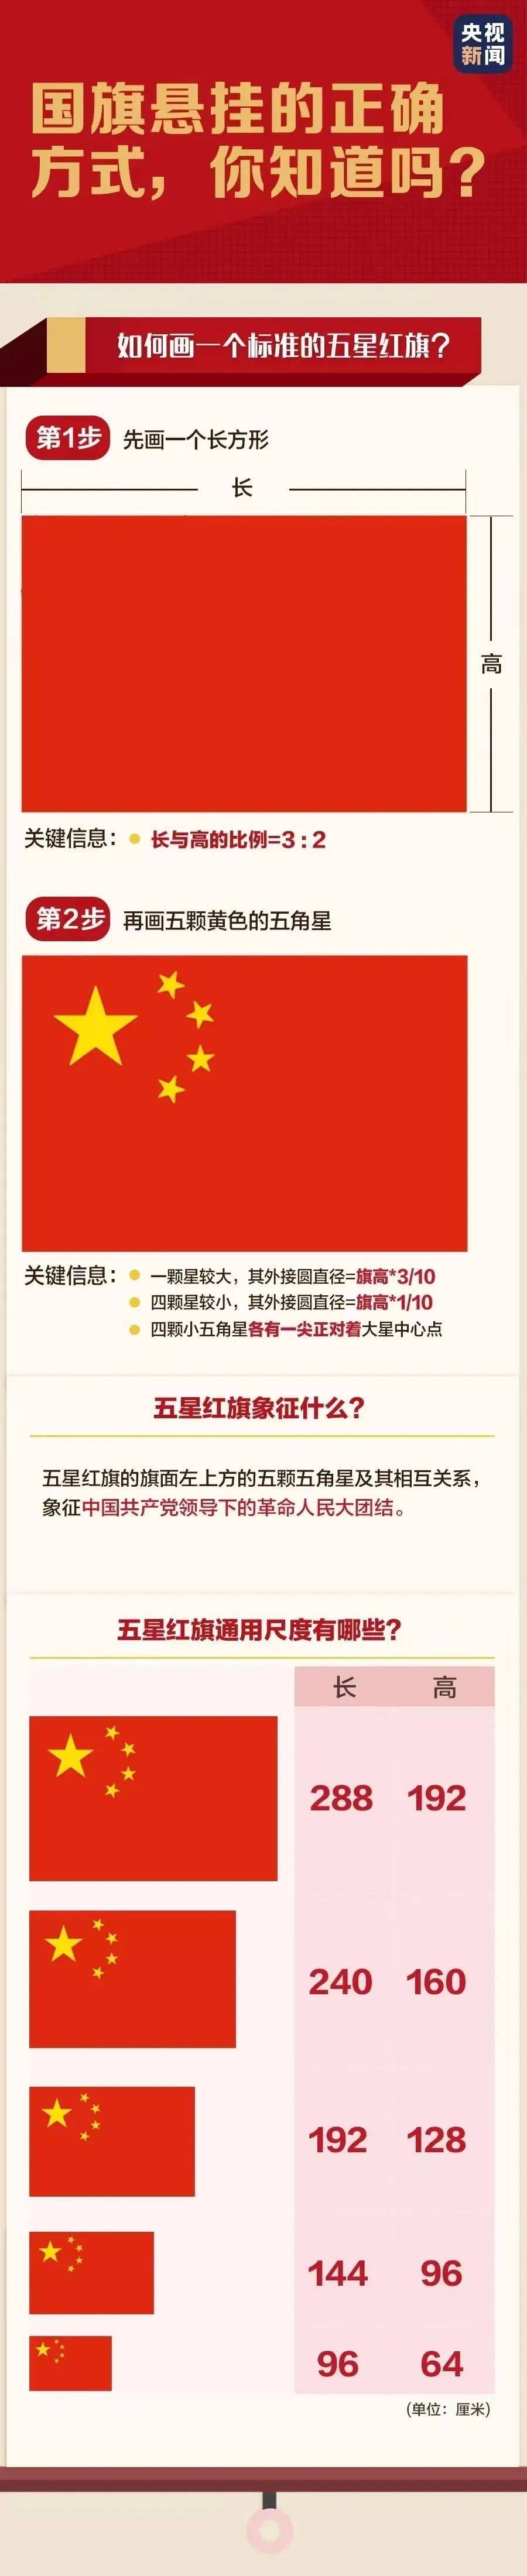 正确使用国旗,一起学习《中华人民共和国国旗法》!